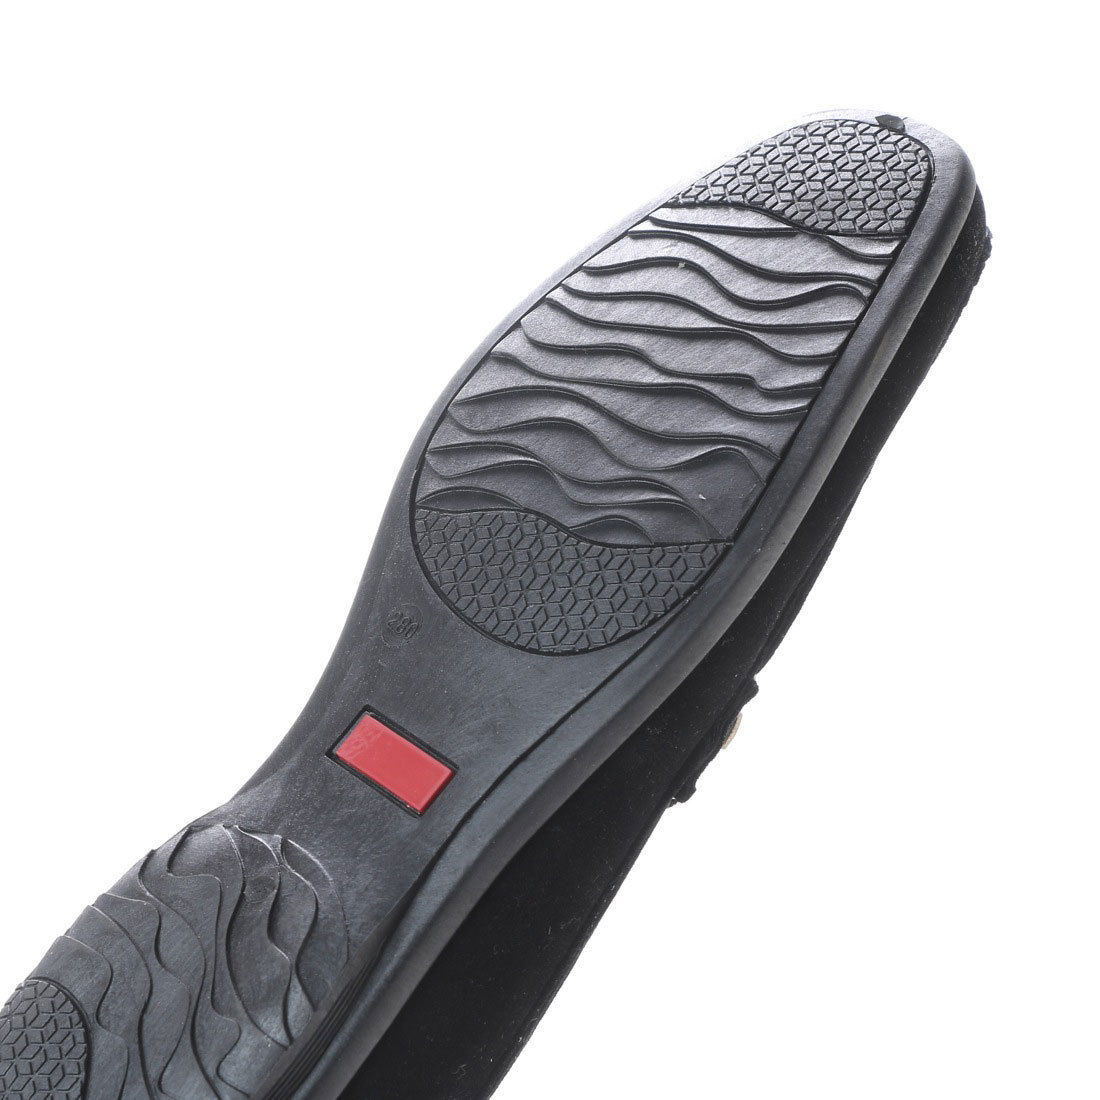 28.0cm ブラック 黒 アウトレット ドライビング シューズ メンズ ビット ローファー スエード調 靴 15109-blk-280_画像5